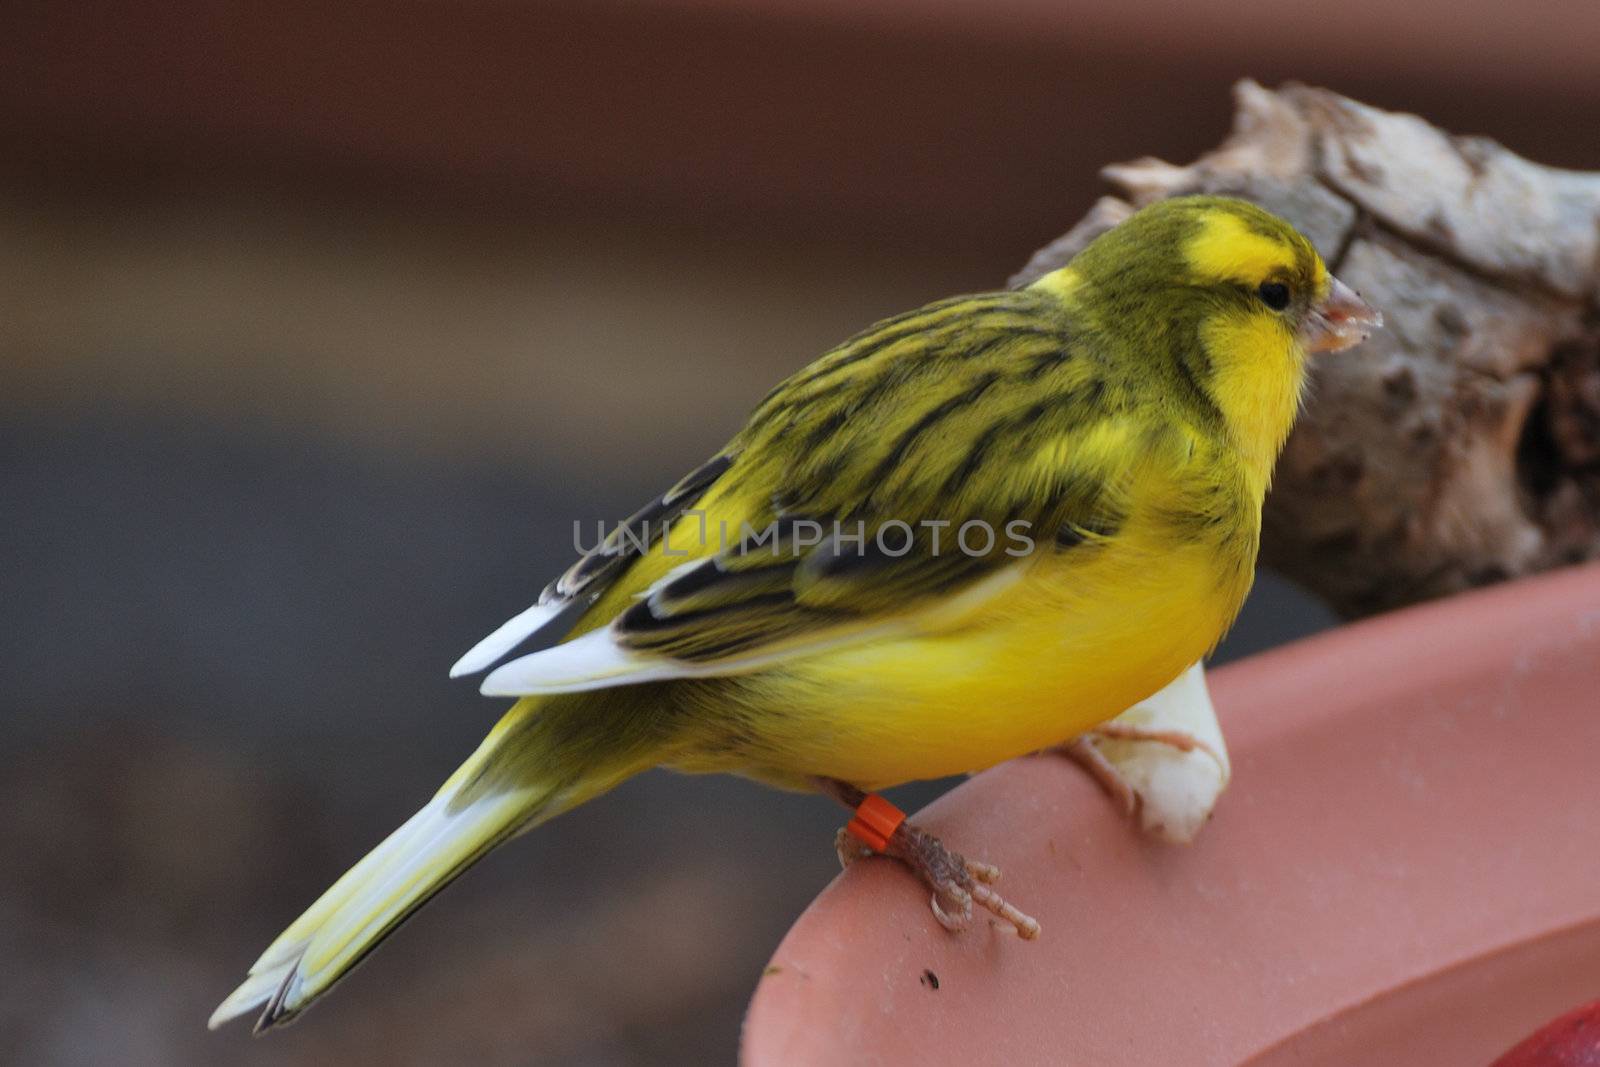 Exotic yellow bird feeding